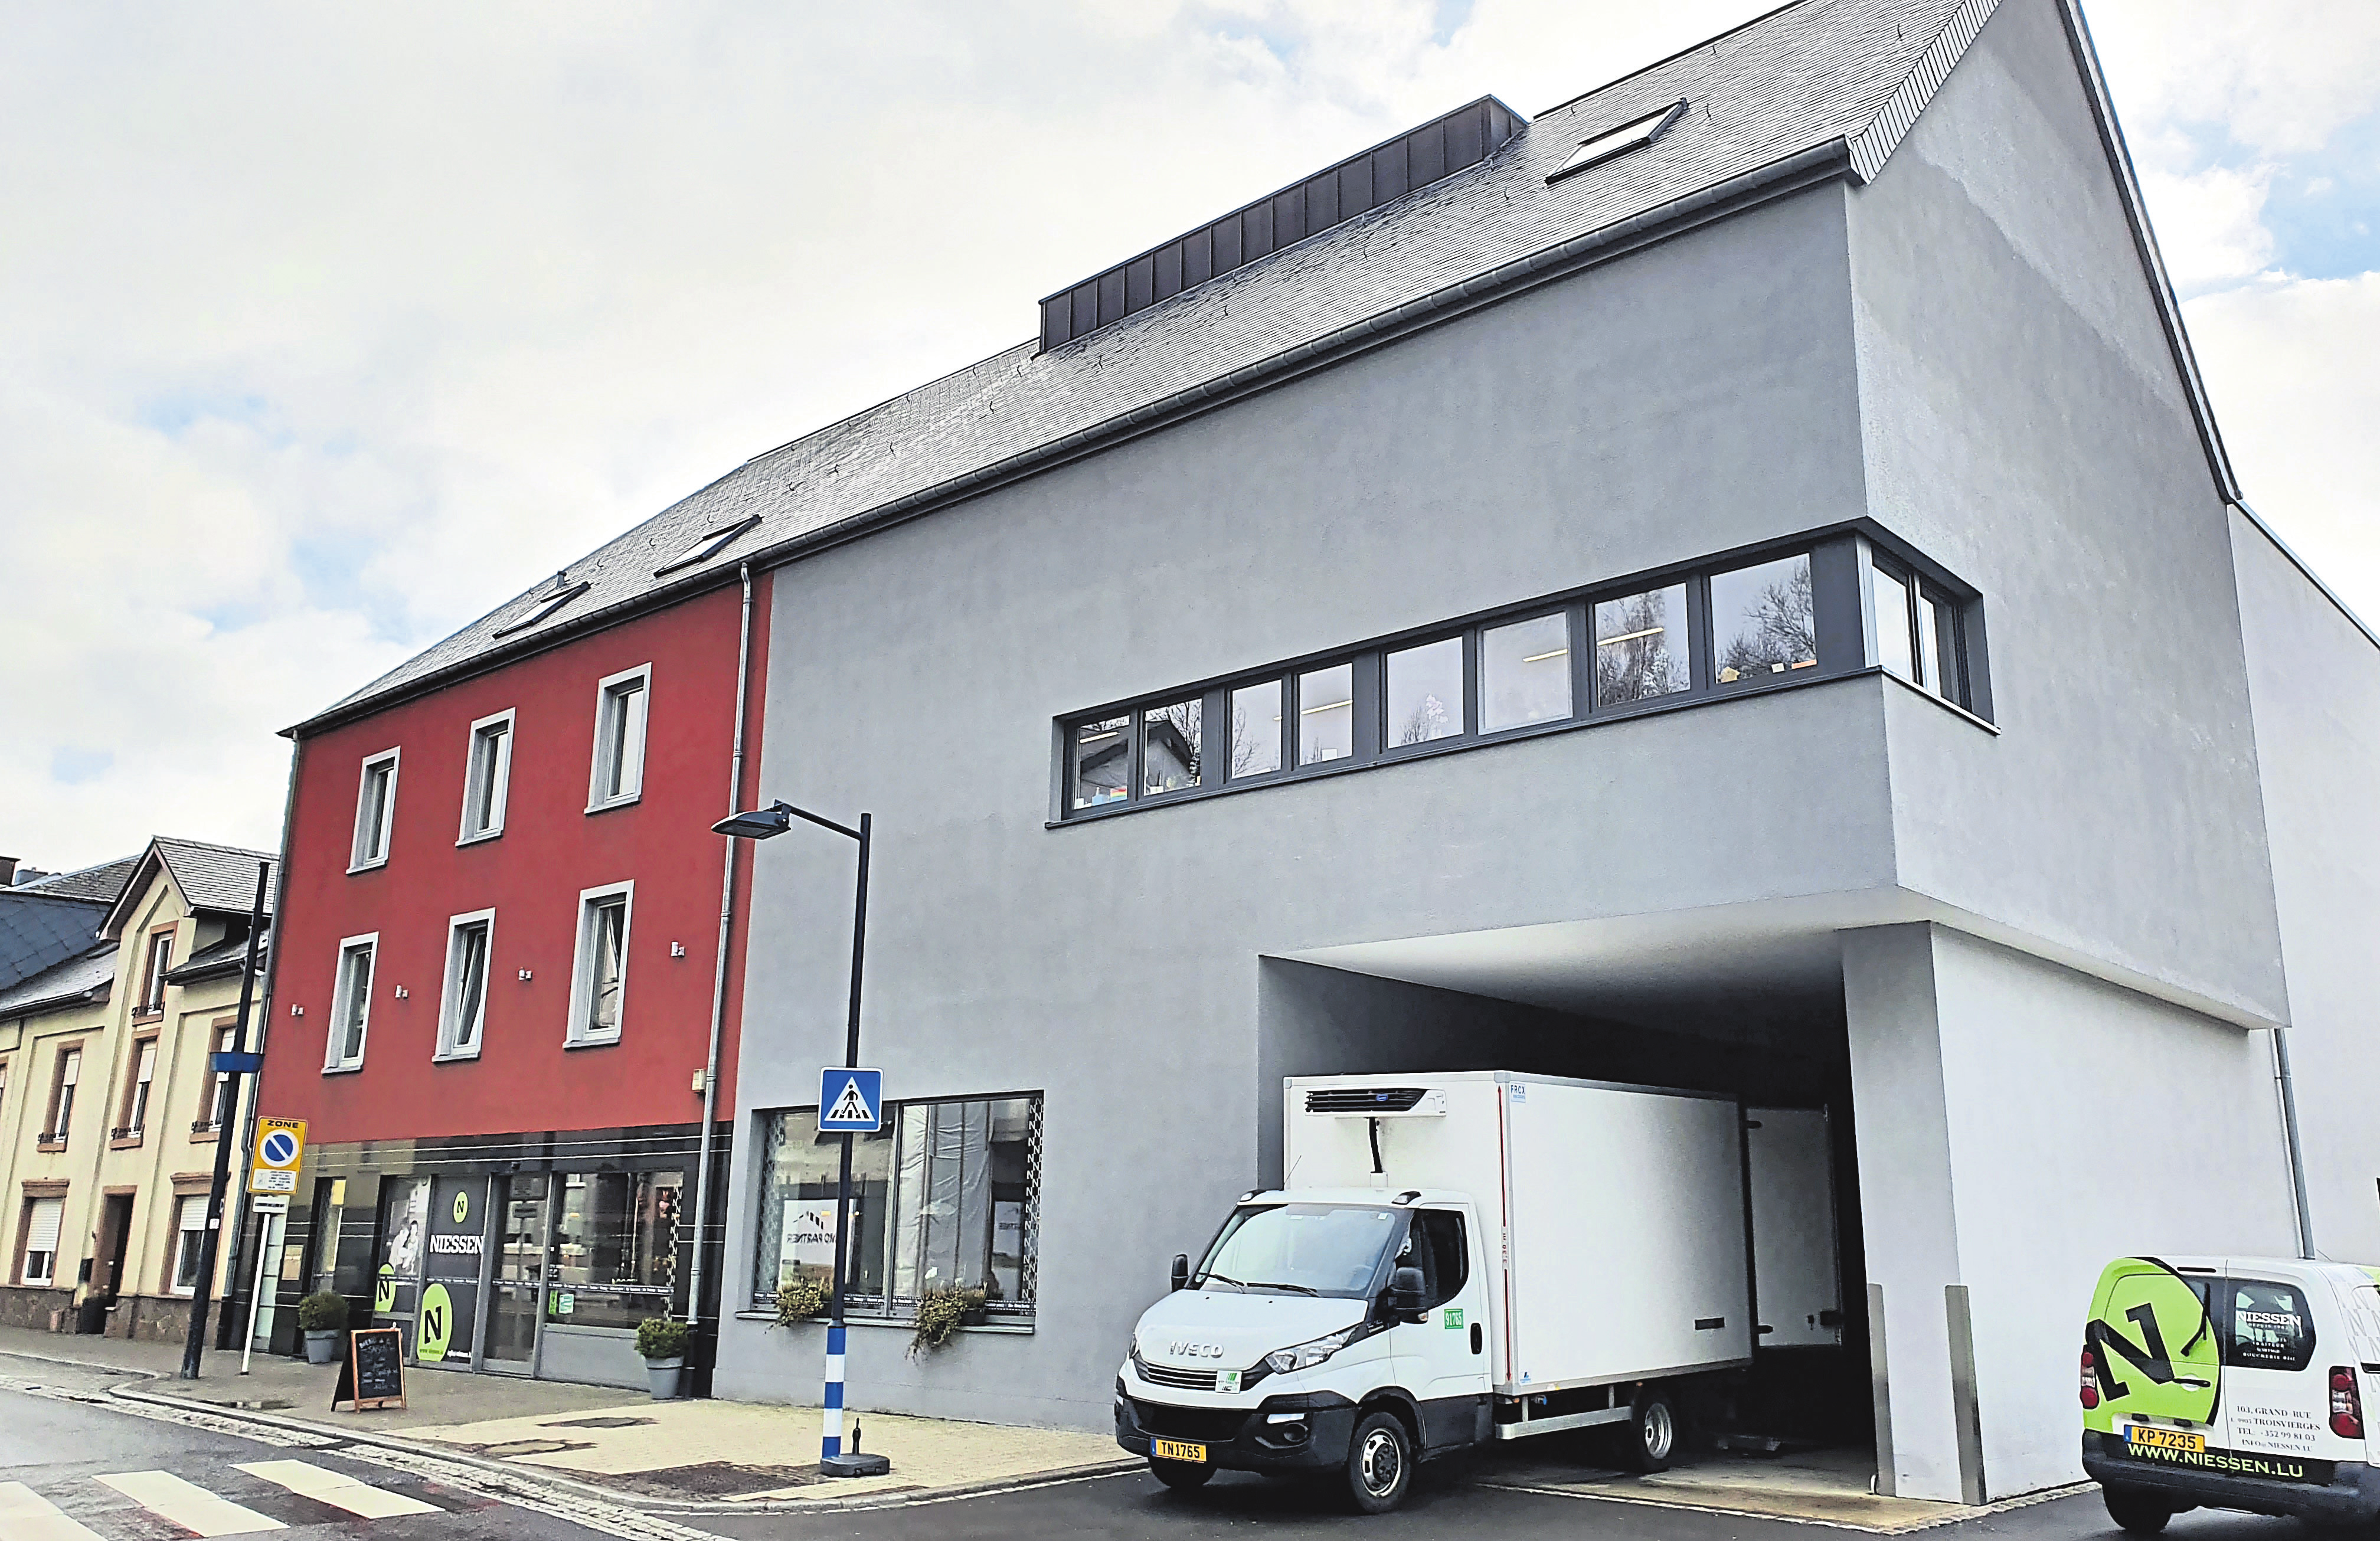 Neben dem Stammhaus in Ulflingen gibt es zwei weitere Niessen-Metzgereien in Bartringen und Luxemburg-Belair.